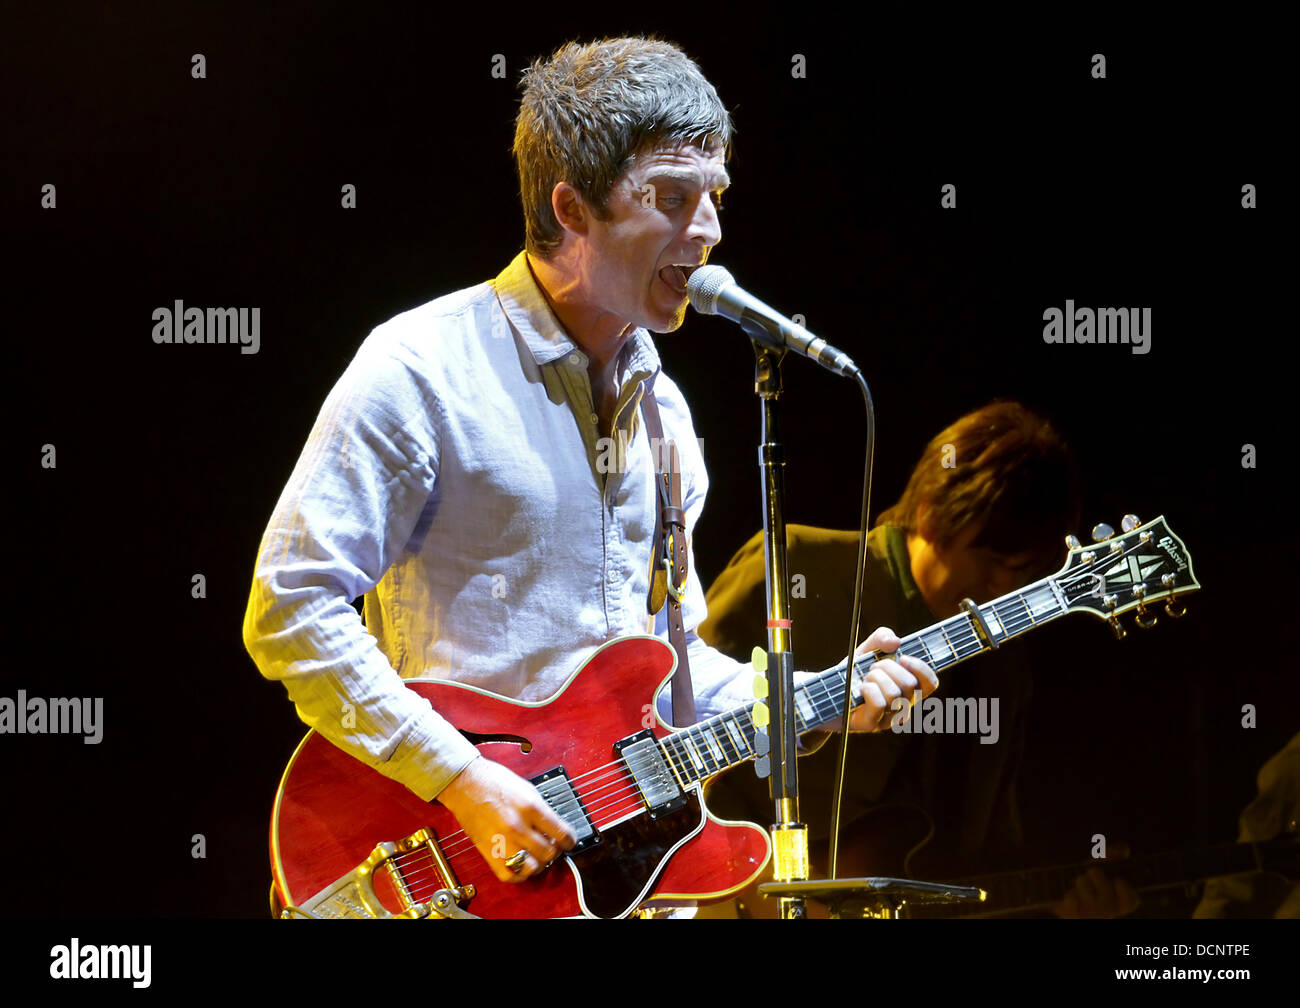 Noel Gallagher eseguendo con la sua nuova band Noel Gallaghers' alta uccelli in volo a Manchester O2 Apollo Manchester, Inghilterra - 26.10.11 Foto Stock